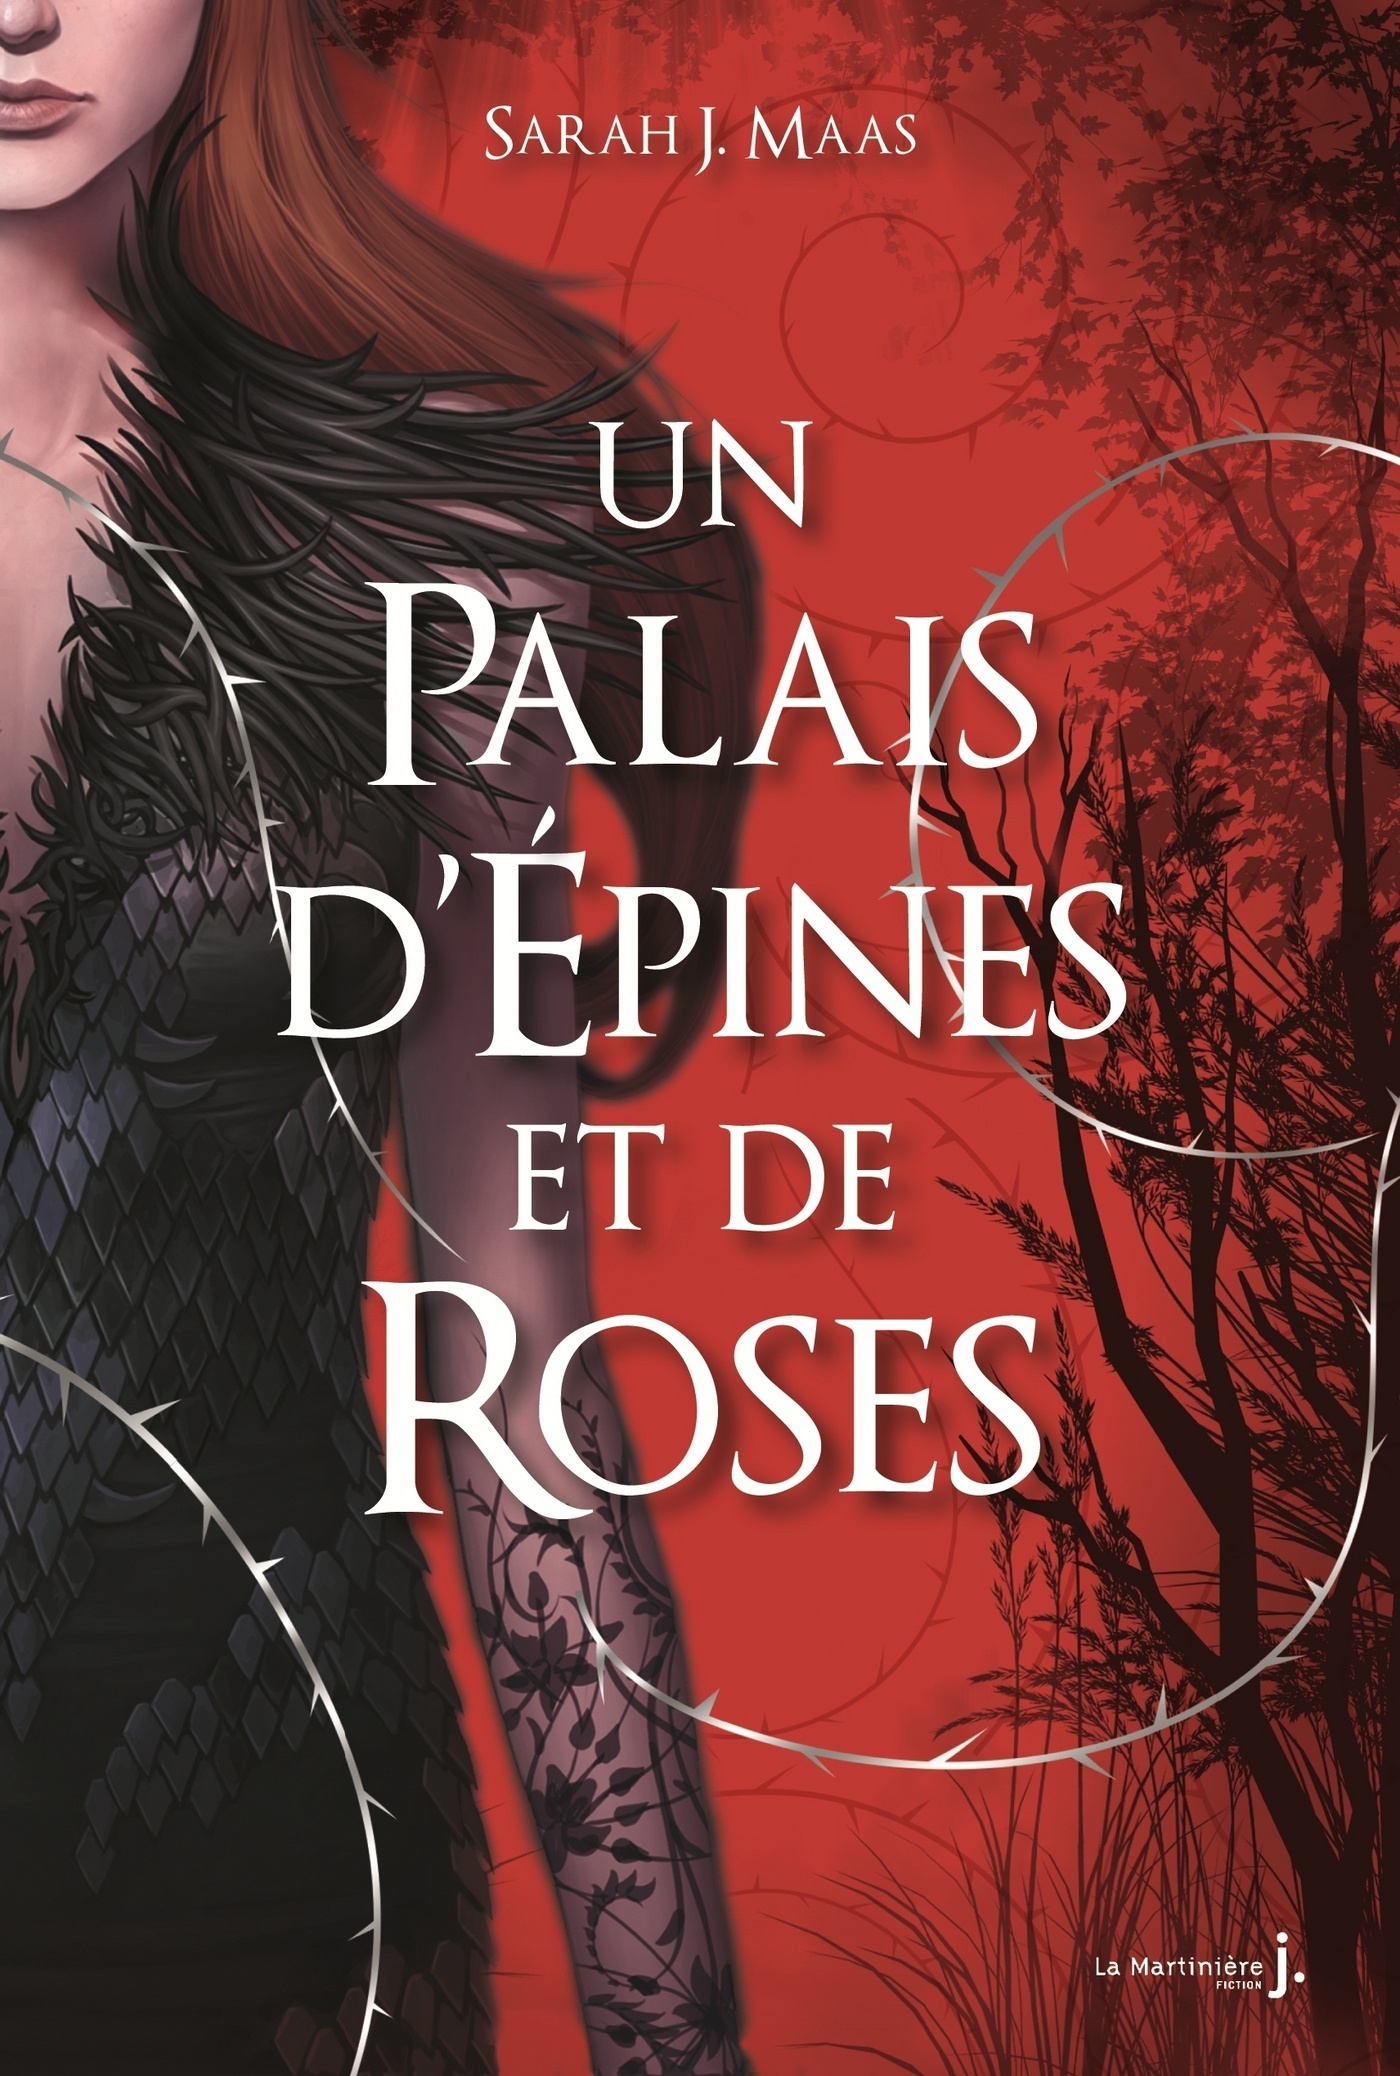 Tag conterevisité sur Entre 2 livres Un-palais-d-epines-et-de-roses-1406059